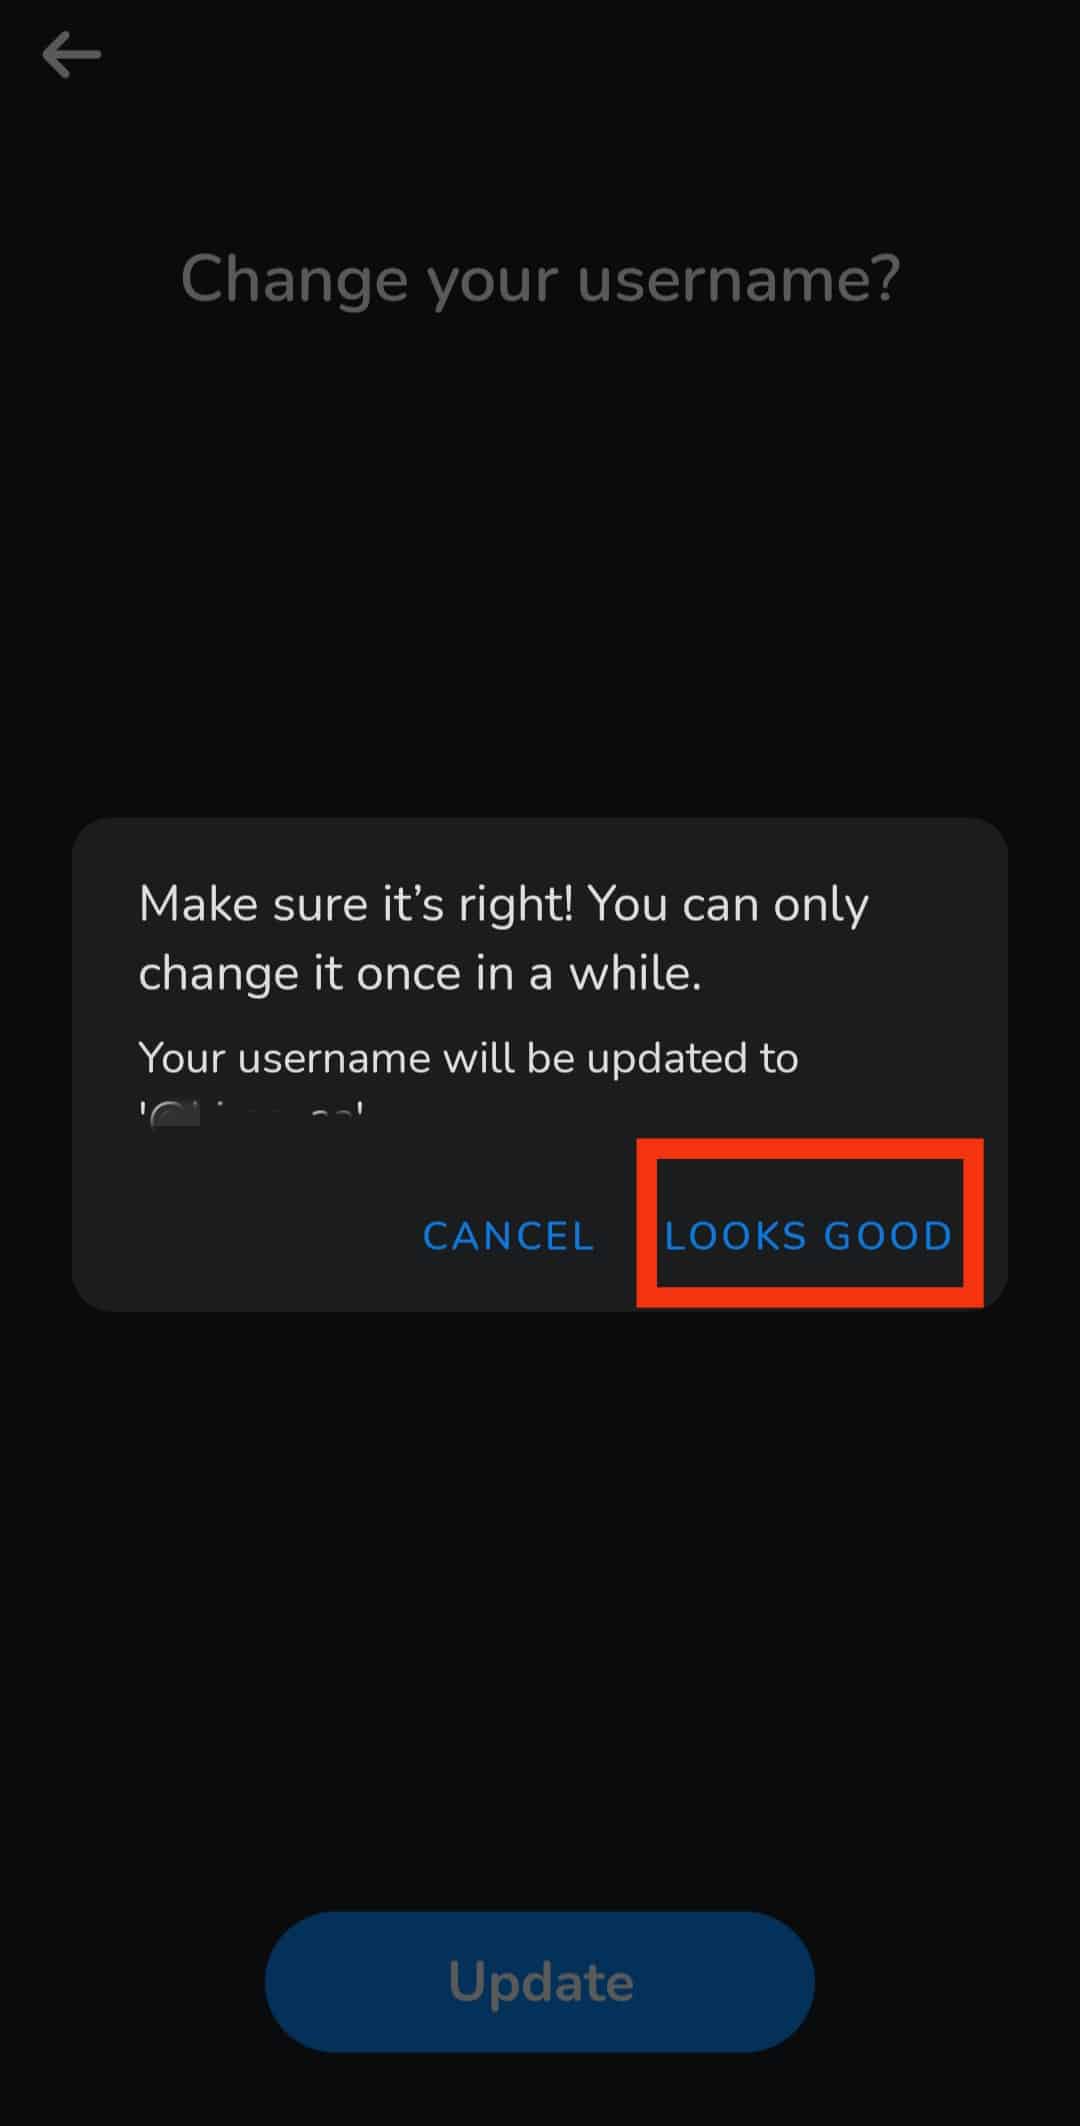 Stuknij przycisk Wygląda dobrze, aby zapisać nową nazwę użytkownika po wyświetleniu okna potwierdzenia.